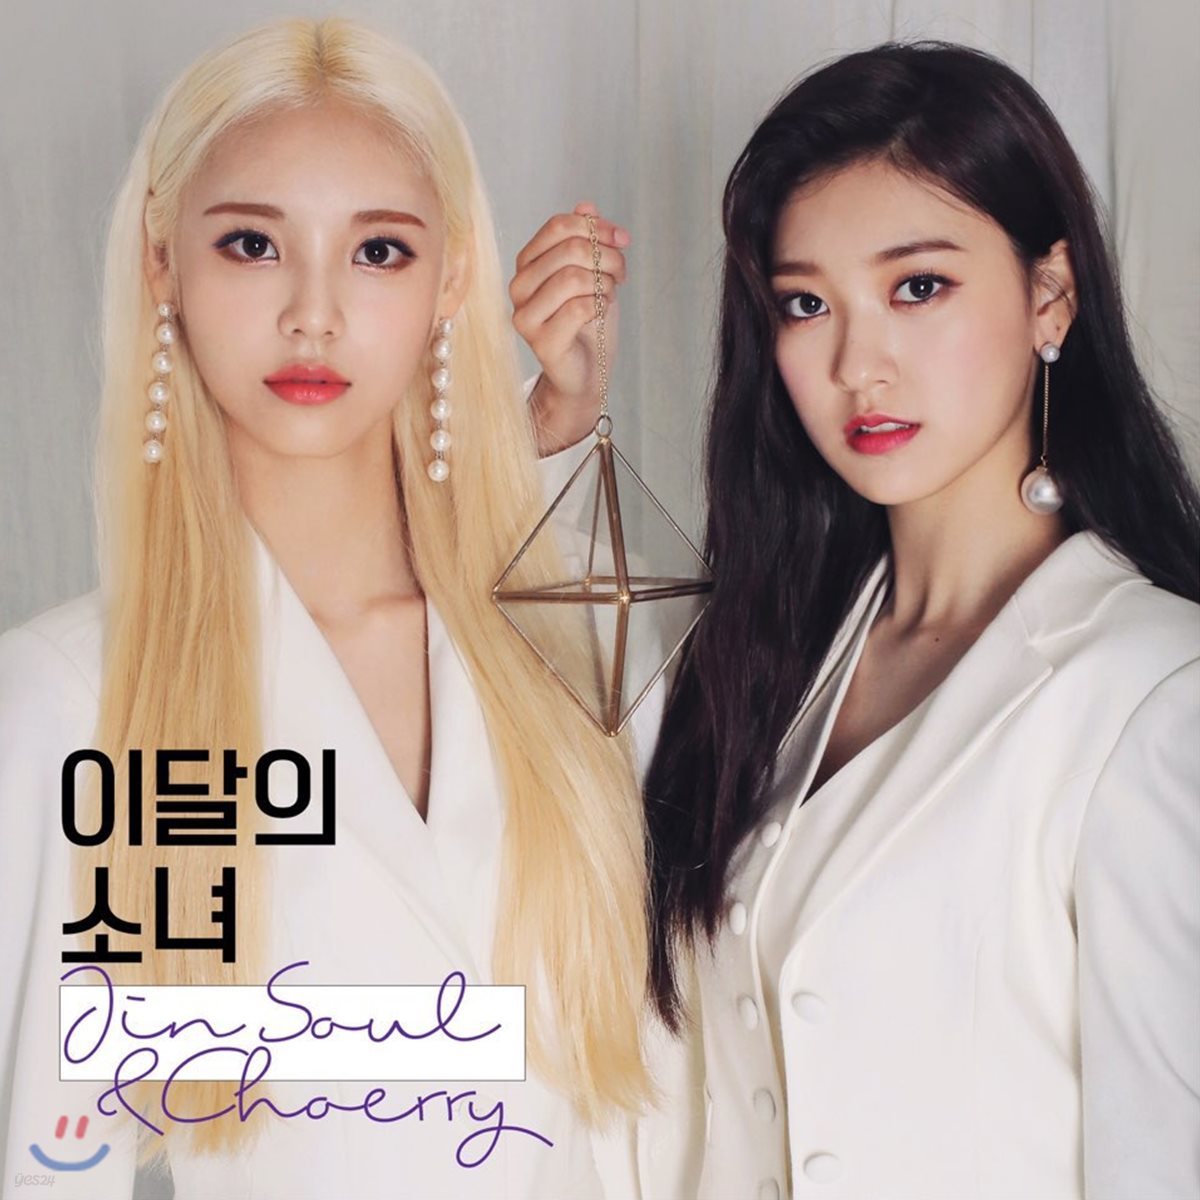 이달의 소녀 (진솔&amp;최리) - JinSoul&amp;Choerry